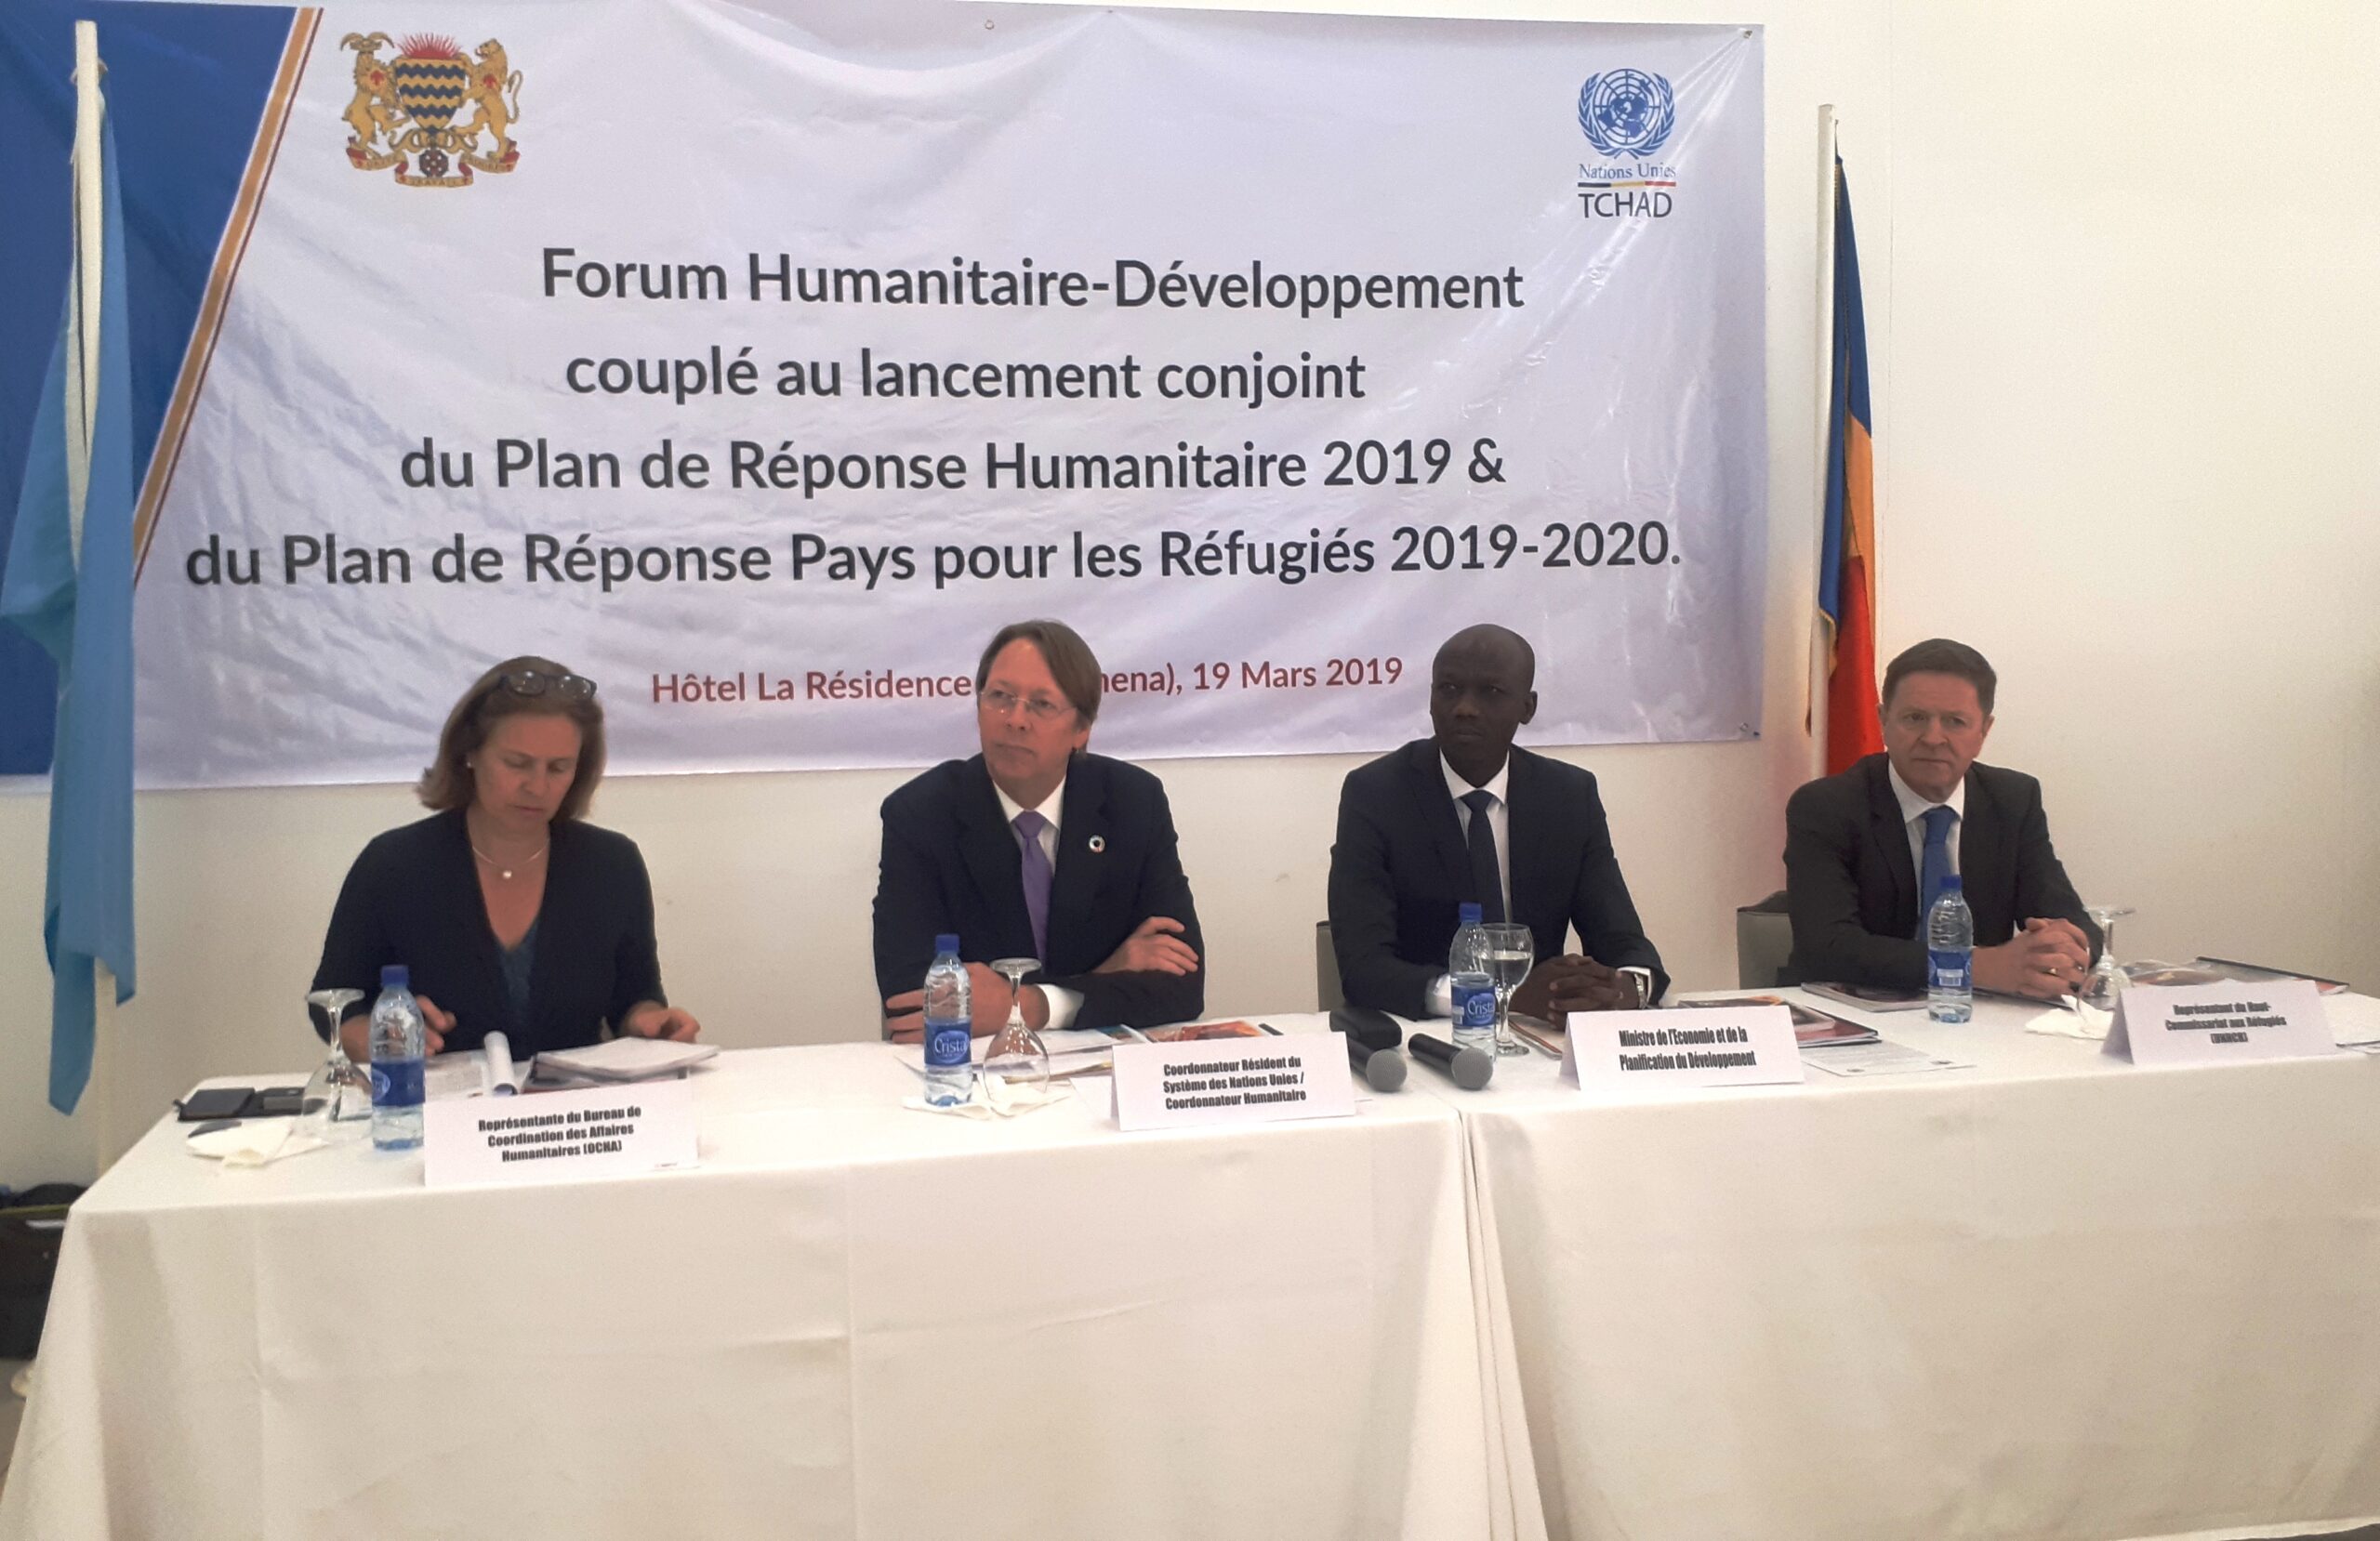 Tchad : les plans de réponse humanitaire et des réfugiés 2019 sont lancés